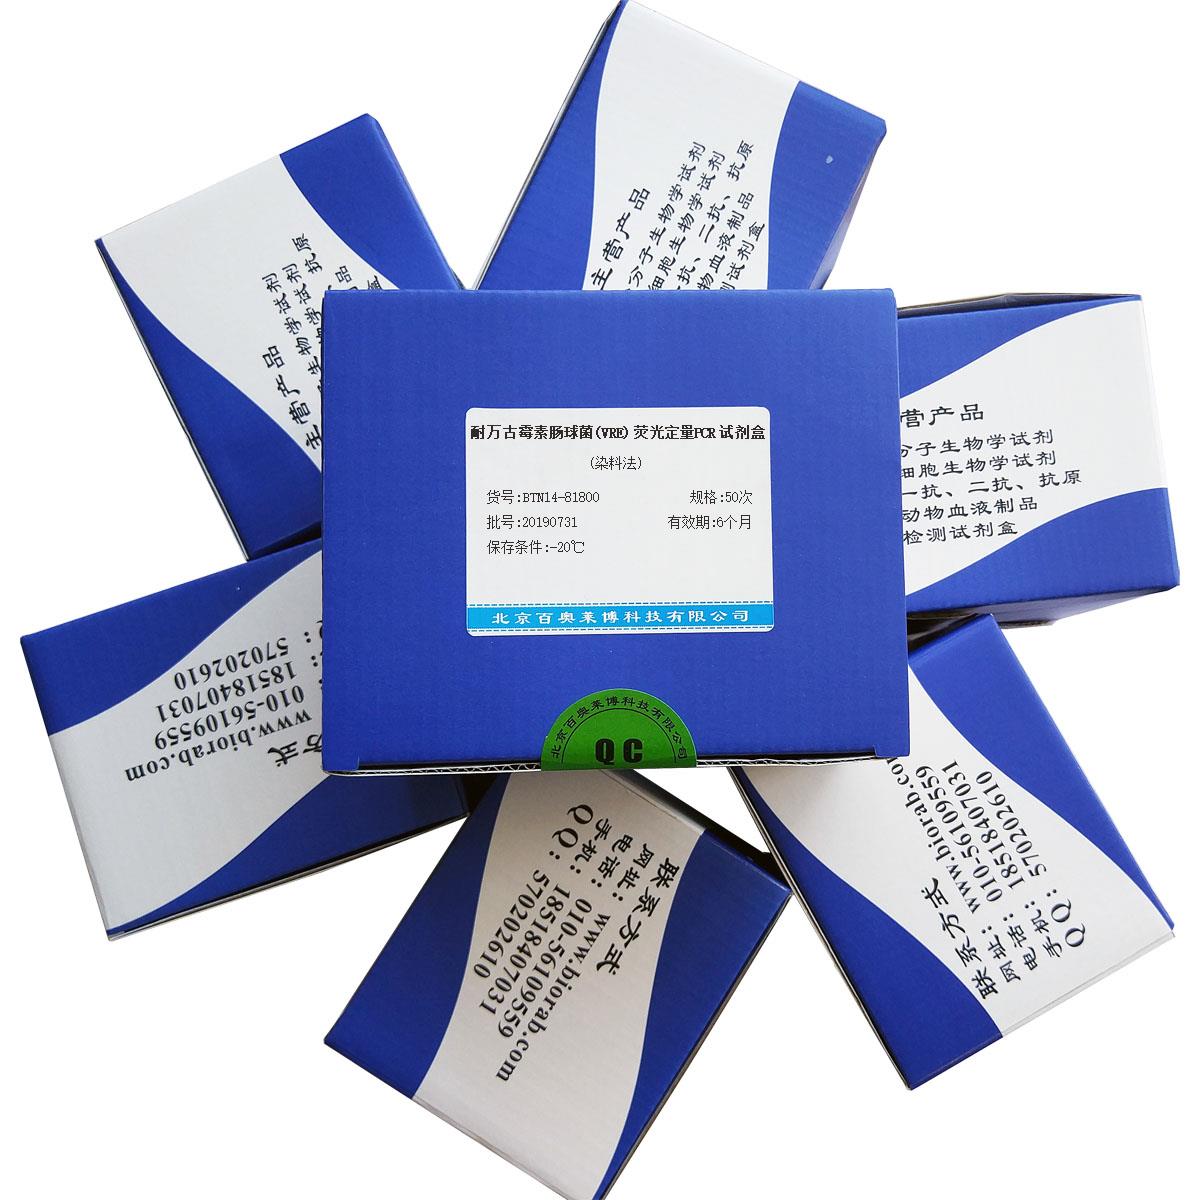 耐万古霉素肠球菌(VRE)荧光定量PCR试剂盒(染料法)